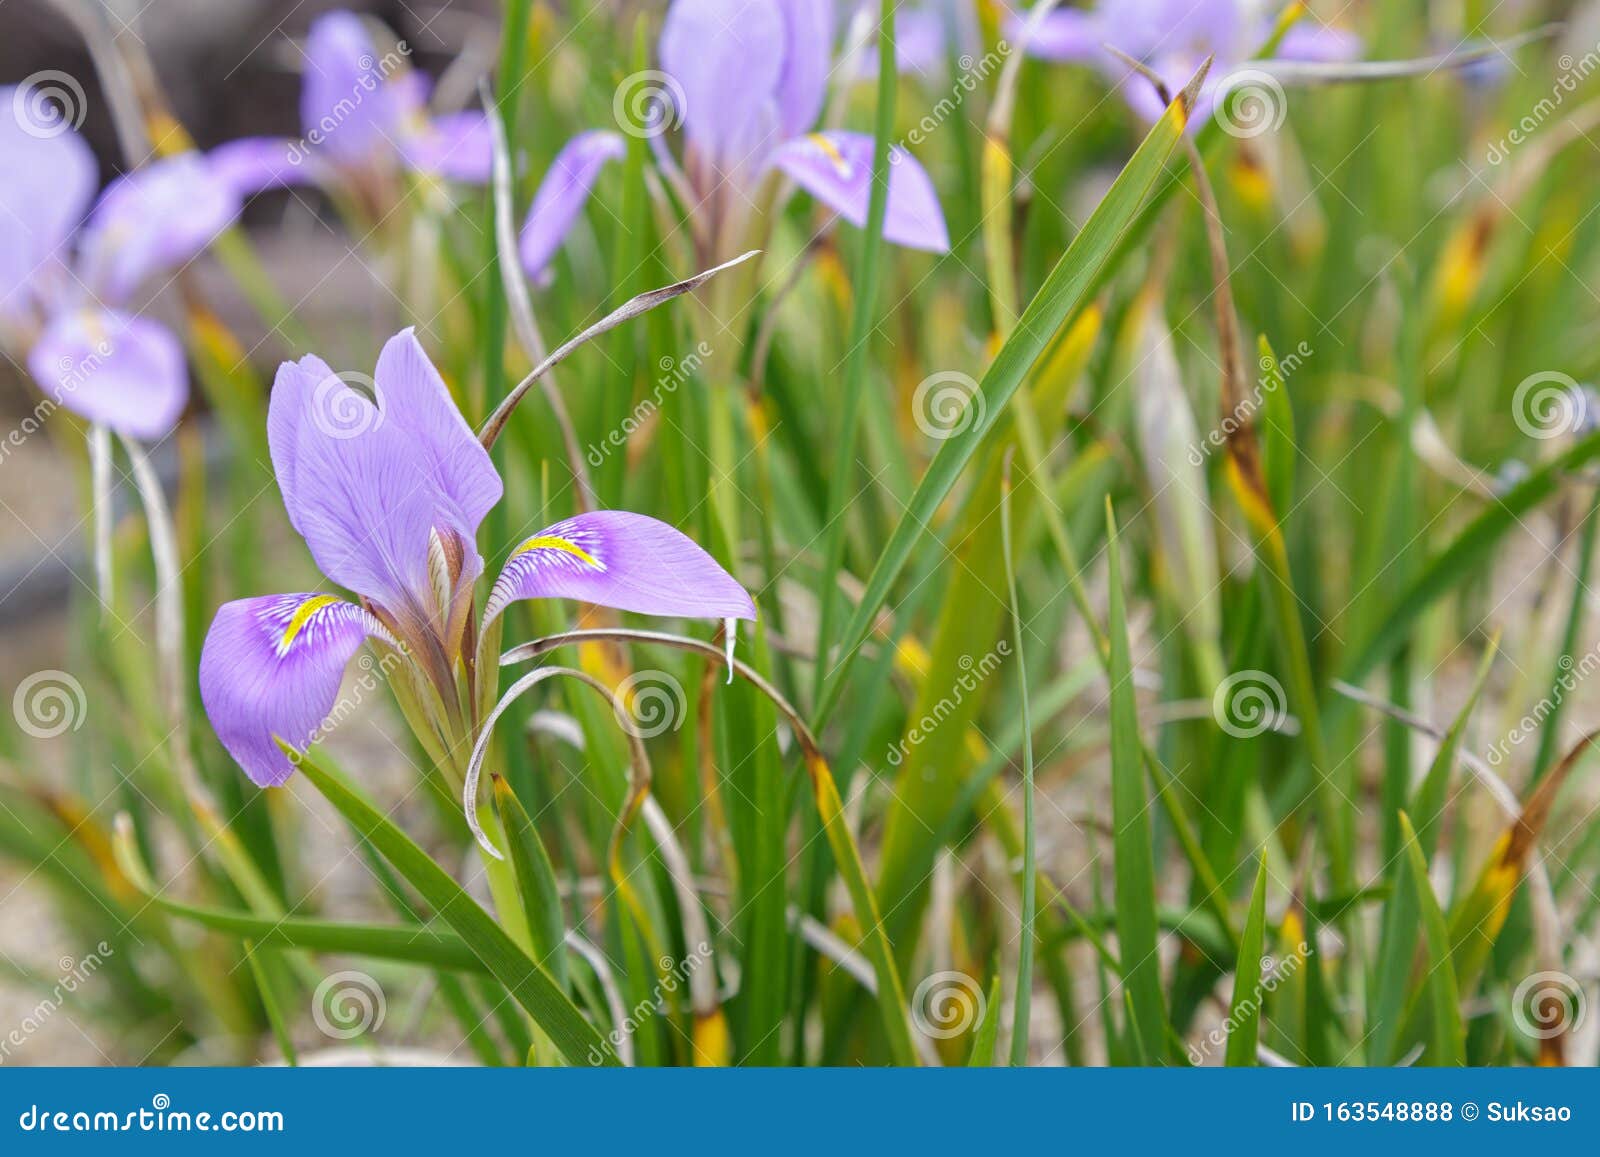 Algerian iris flower stock photo. Image of closeup, blossom - 163548888